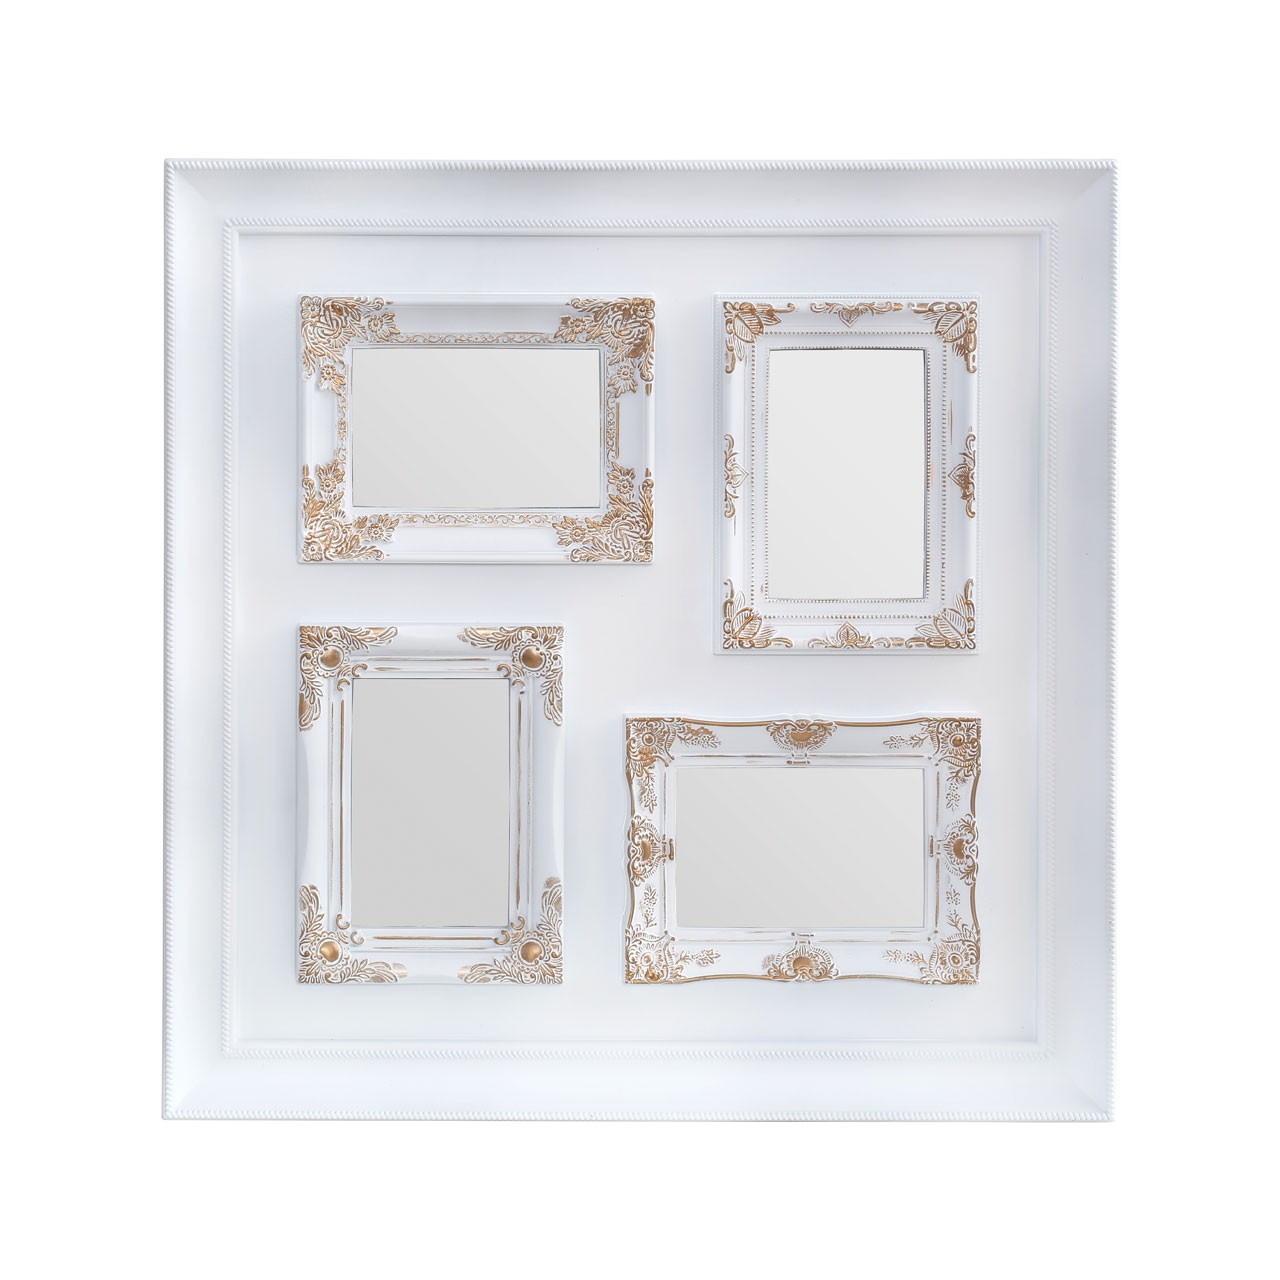 Prime Furnishing 4 Photo Plastic Photo Frame - White & Gold